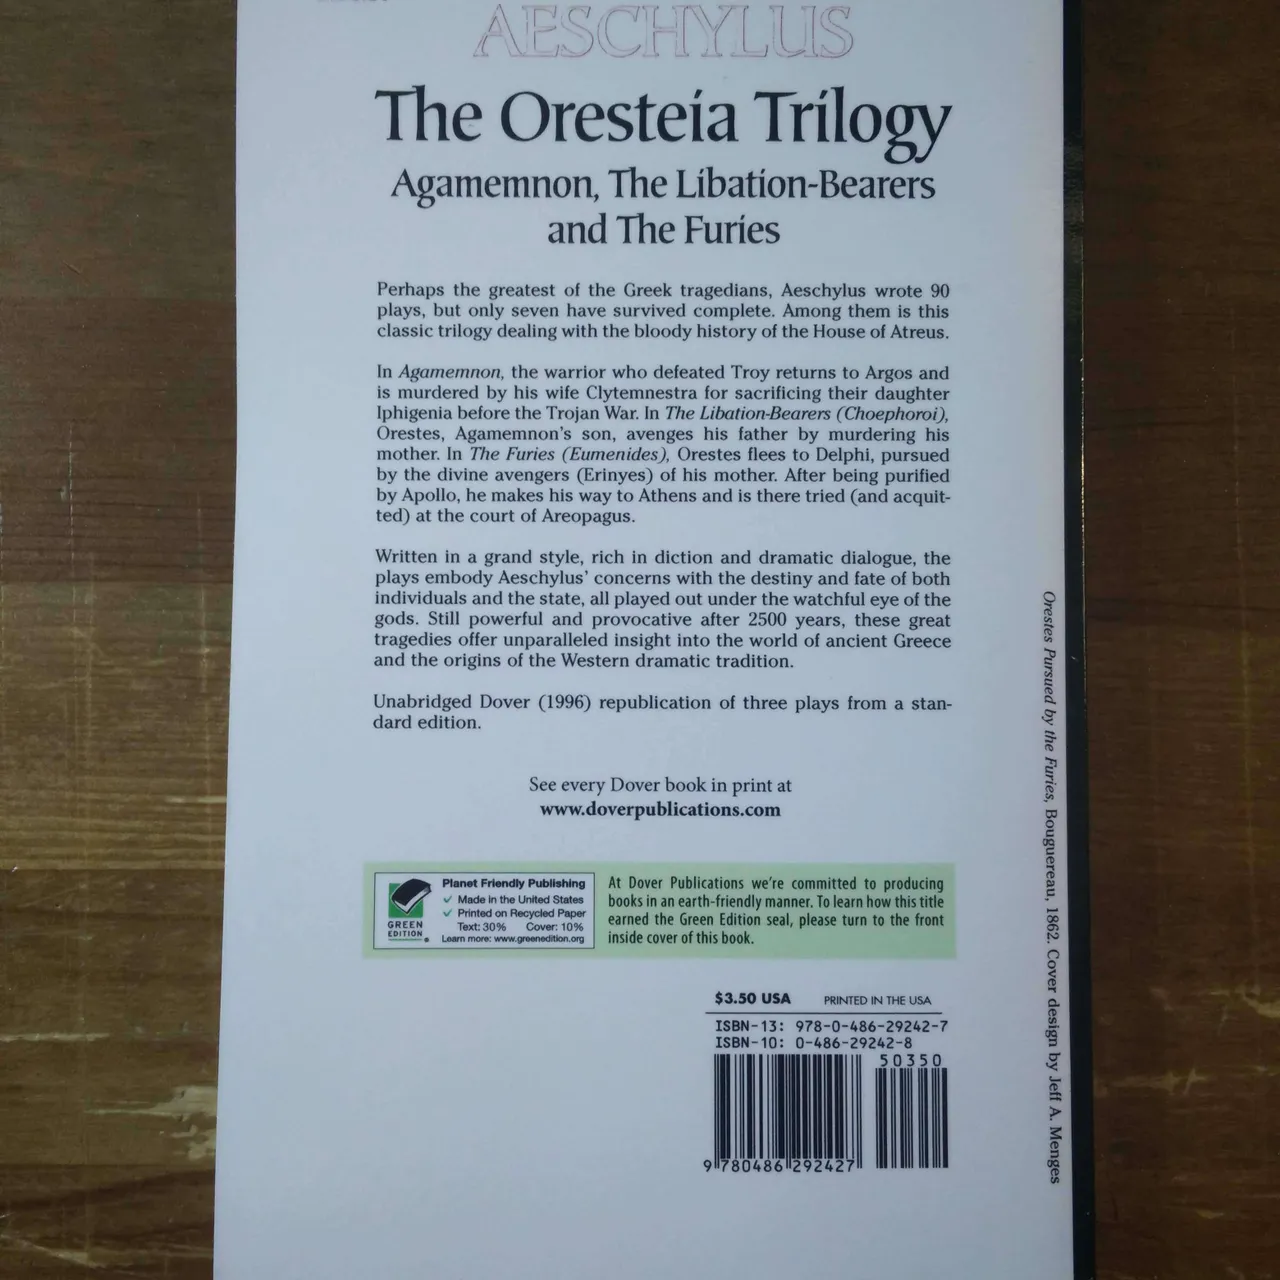 The Oresteia Trilogy by Aeschylus photo 3